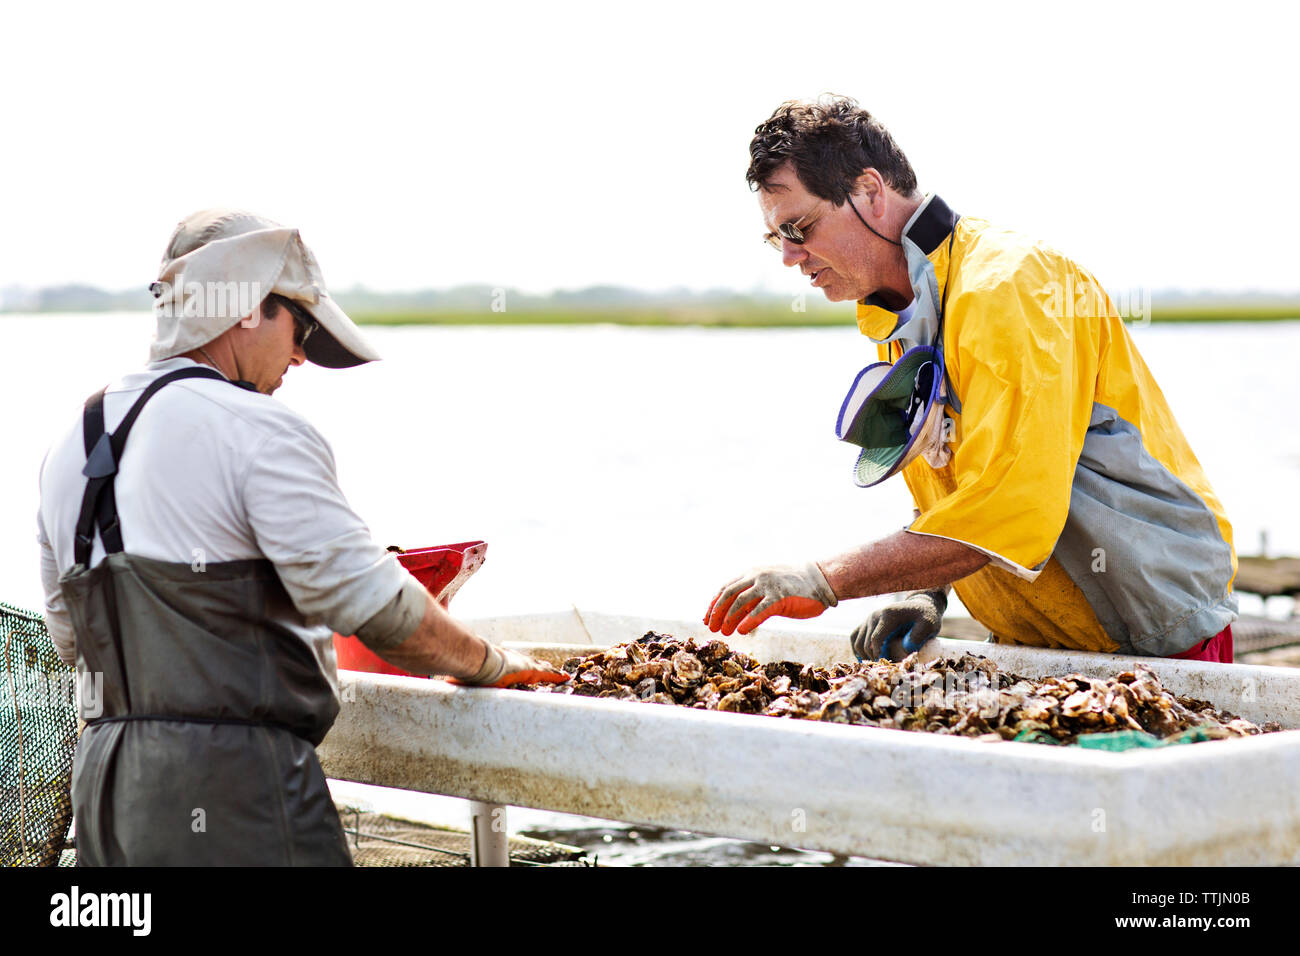 Los trabajadores que trabajan en la industria pesquera Foto de stock